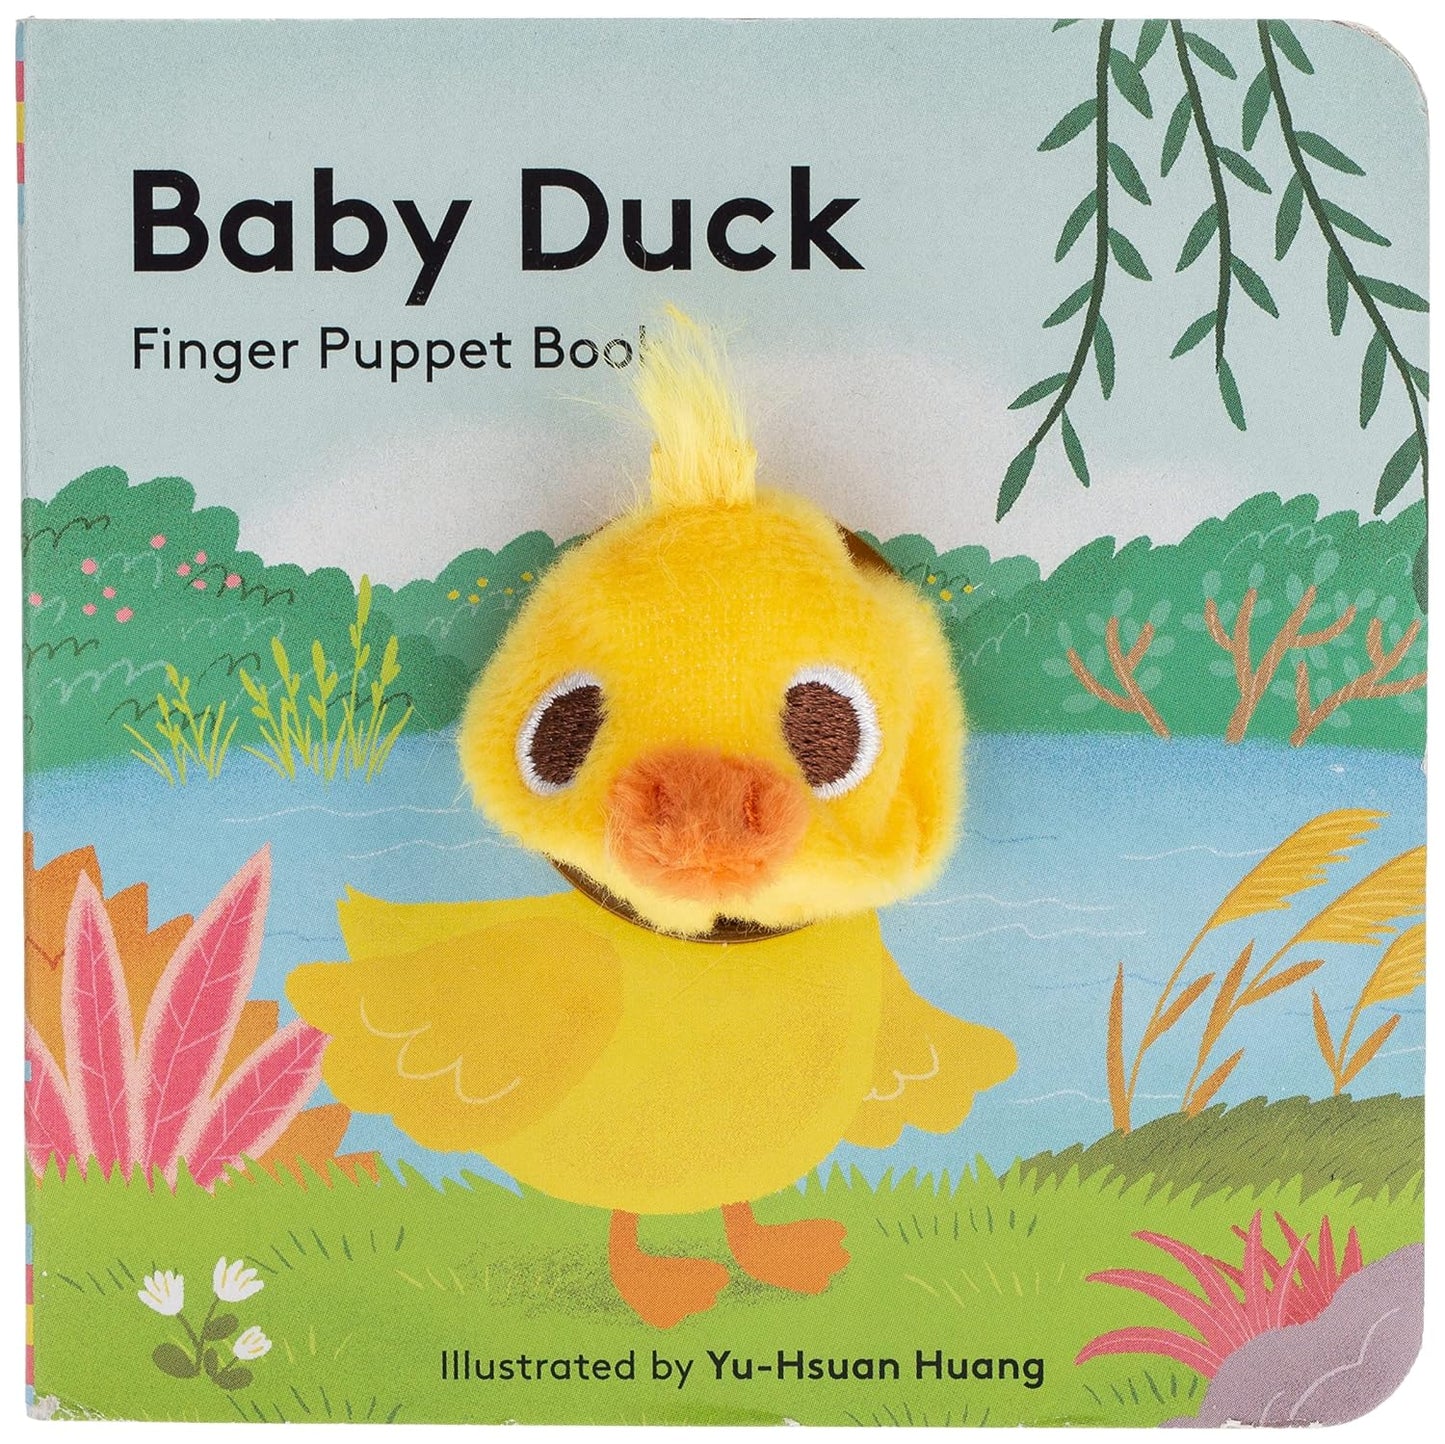 FINGER PUPPET BOOK - BABY DUCK